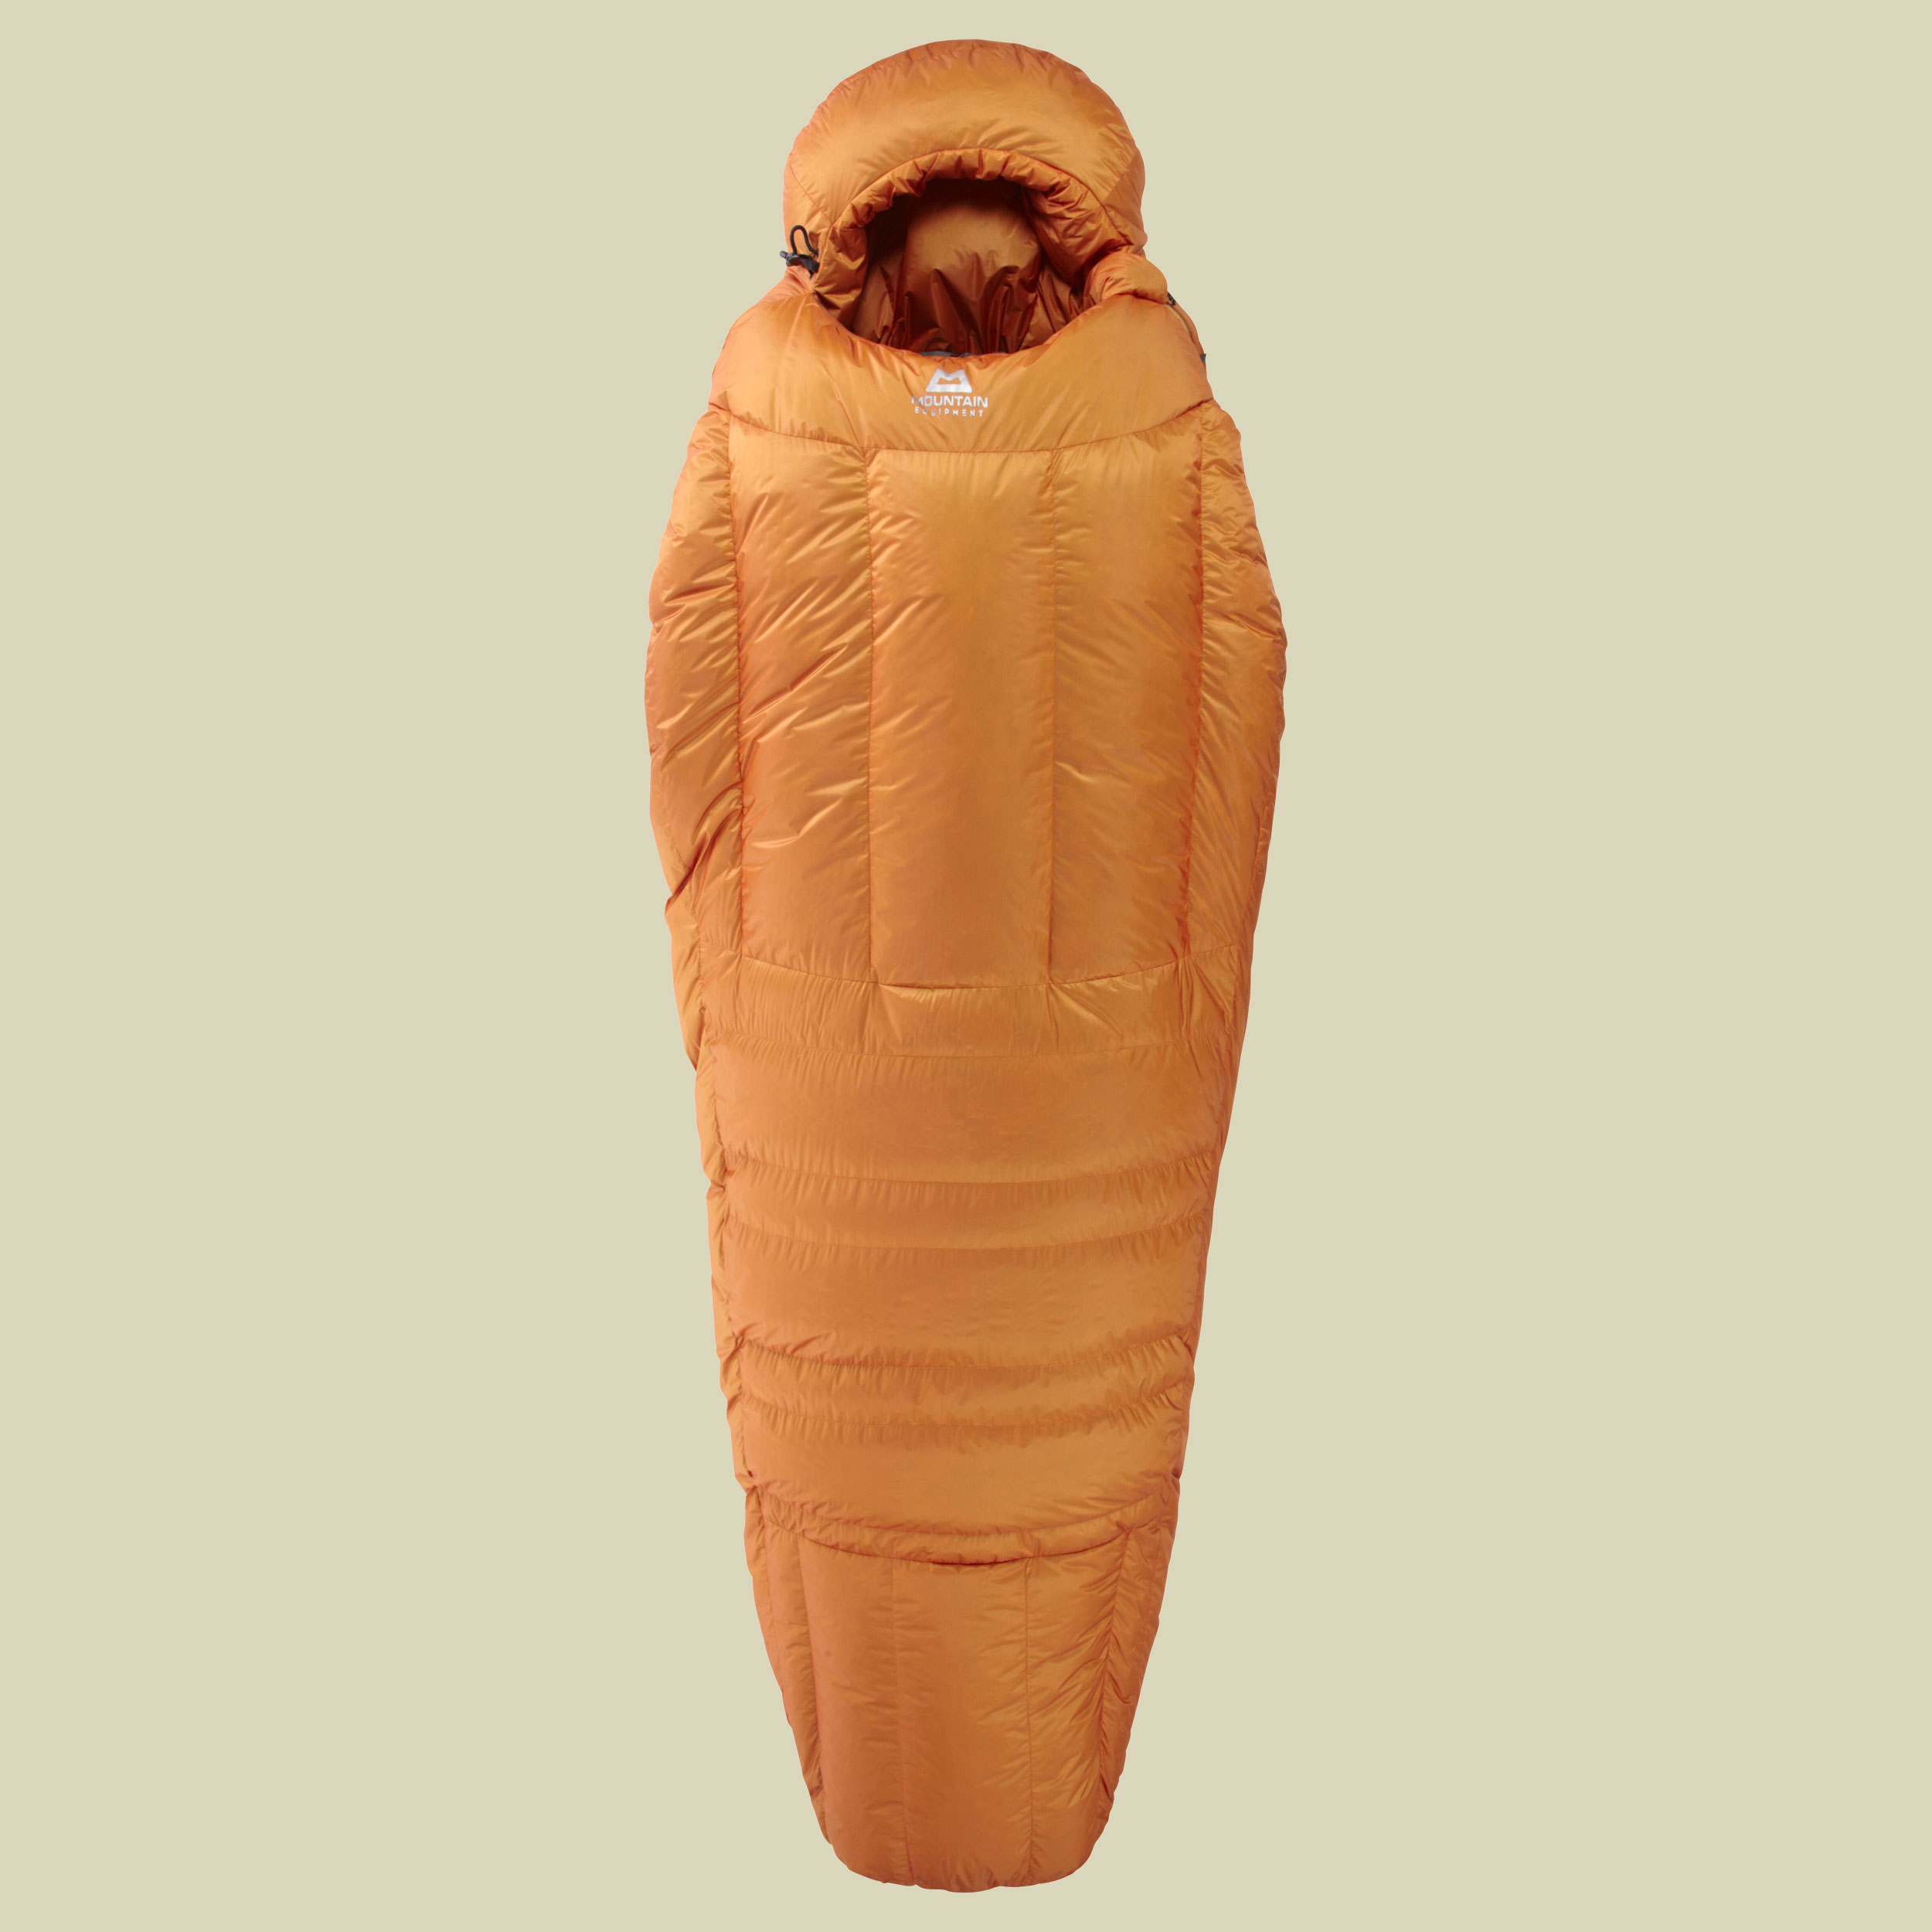 Snowline bis Körpergröße Schlafsack 185 cm cm Farbe Marmalade, Reißverschluss Schlafsack links